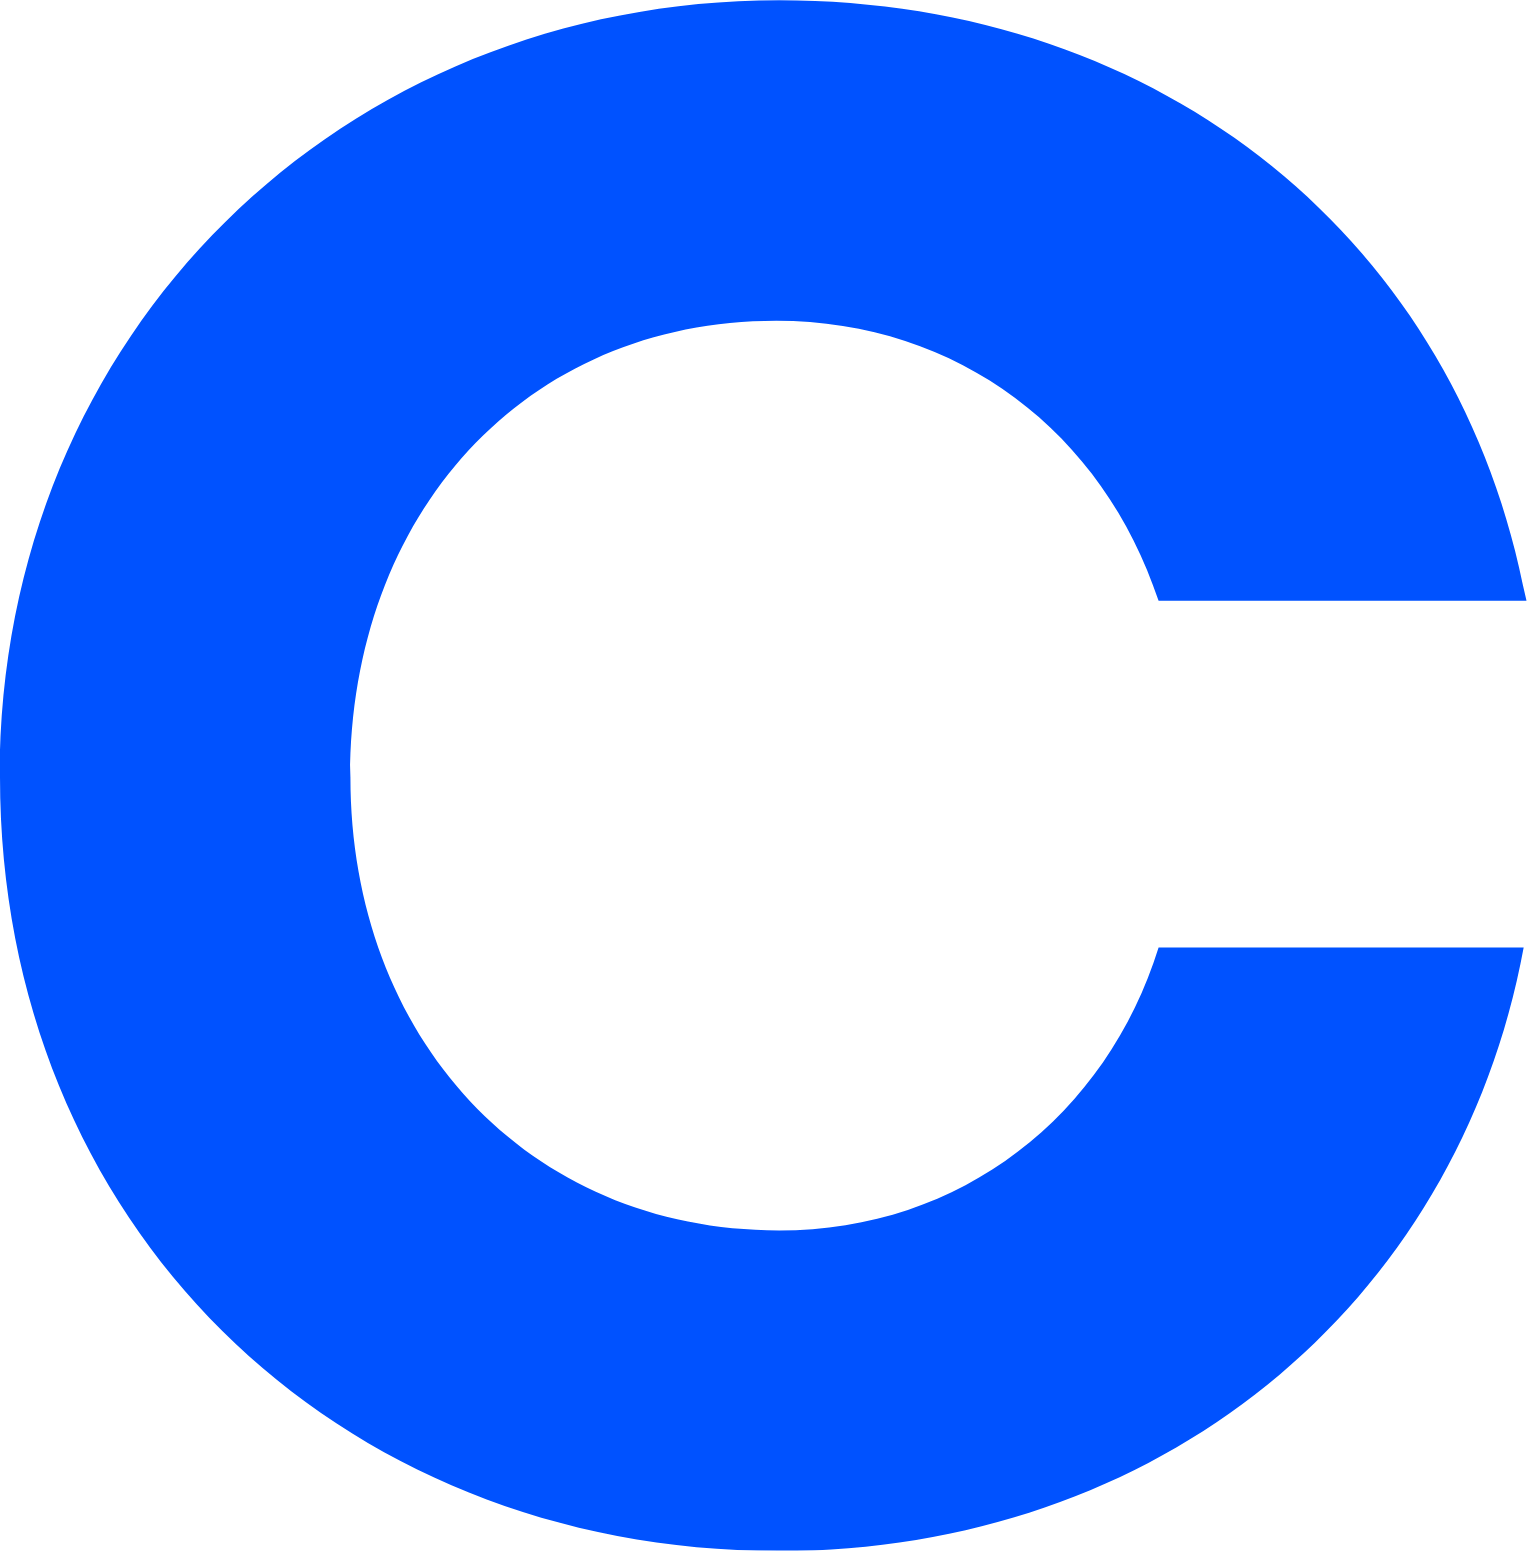 Coinbase Logo PNG Image